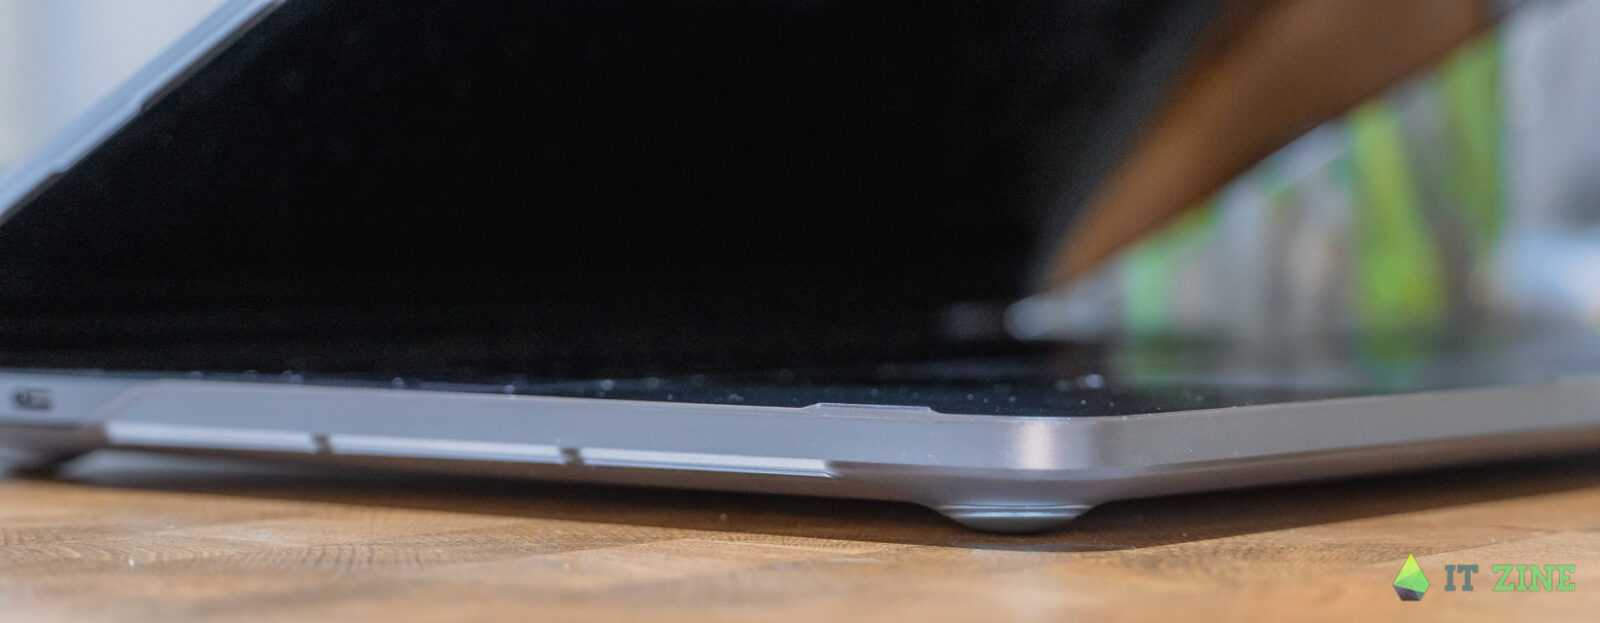 Обзор кейсов Moshi versacover и iGlaze для iPad Pro и MacBook Pro: безопасность превыше всего (itzine.ru Moshi cases 16)